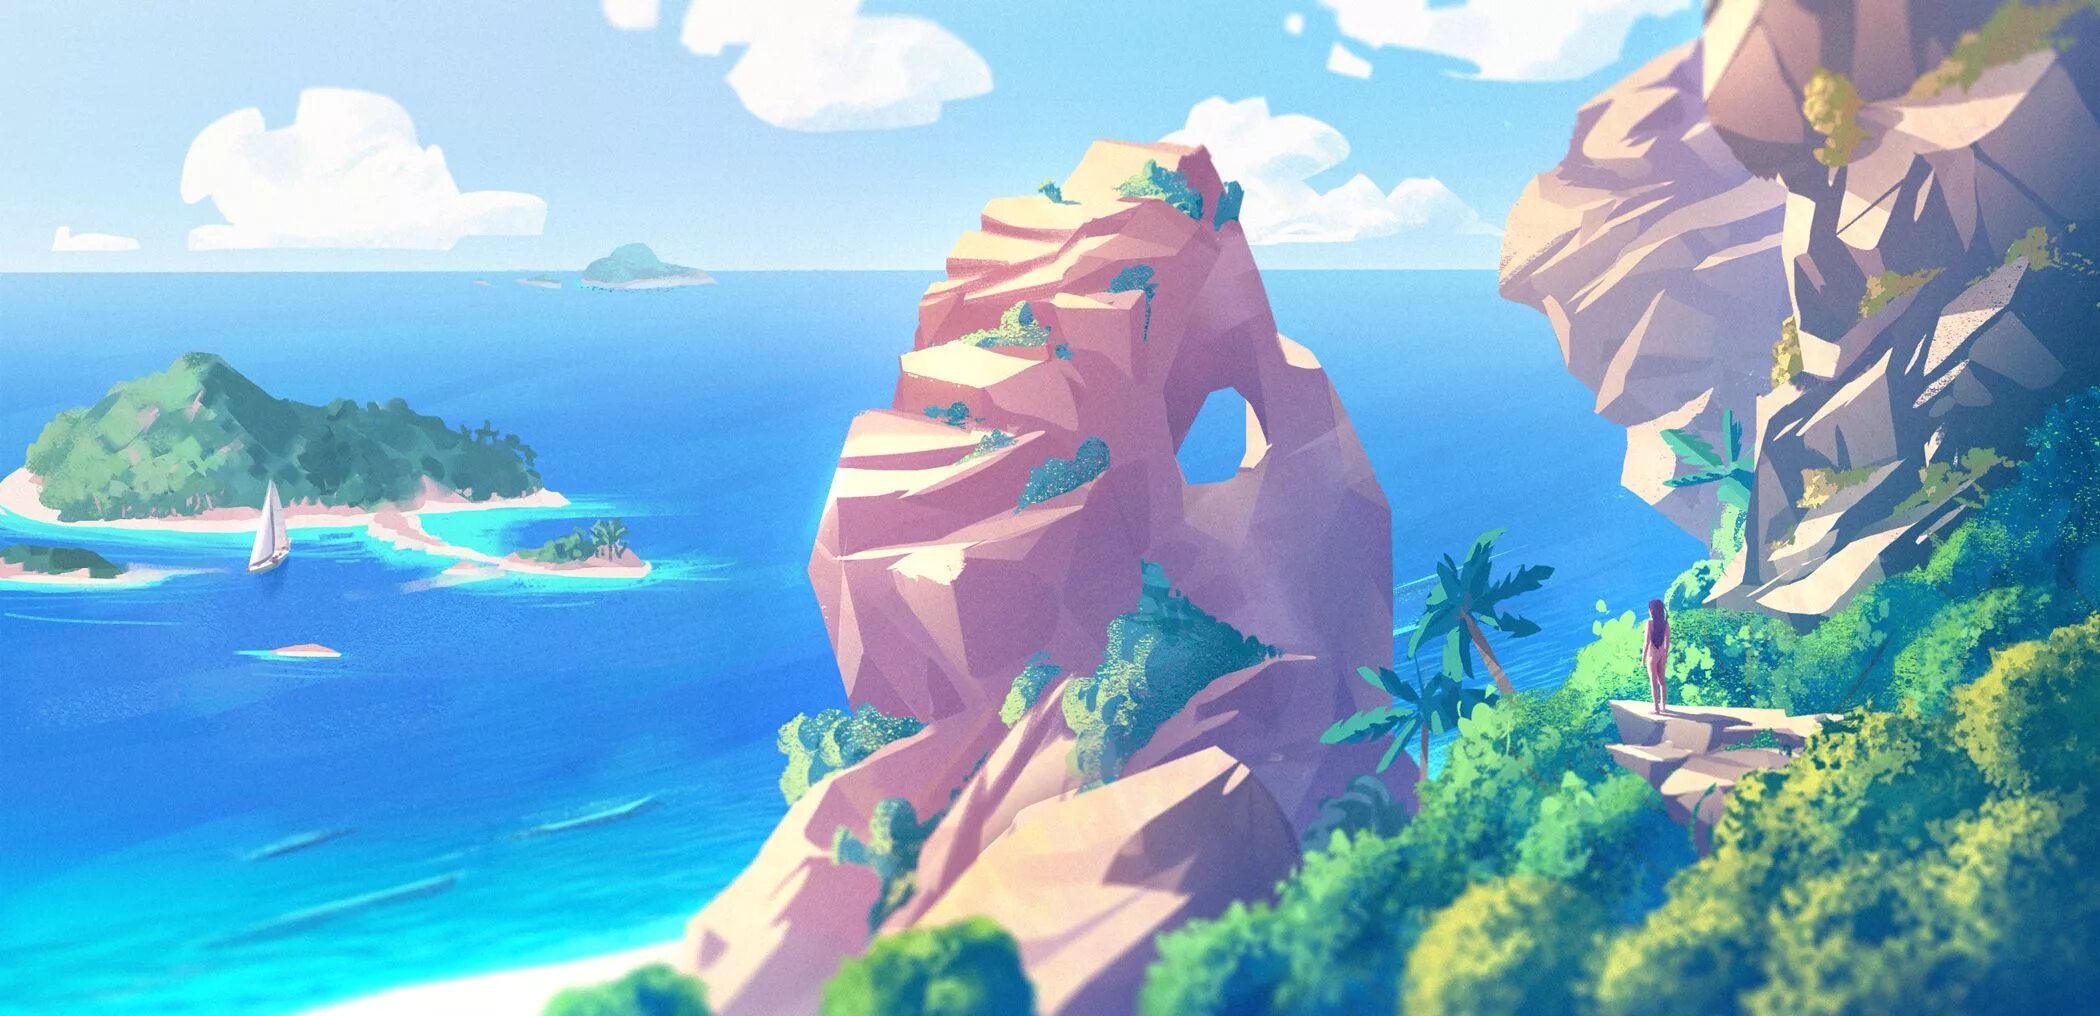 Animeverse island. Море в мультяшном стиле. Пляж арт.